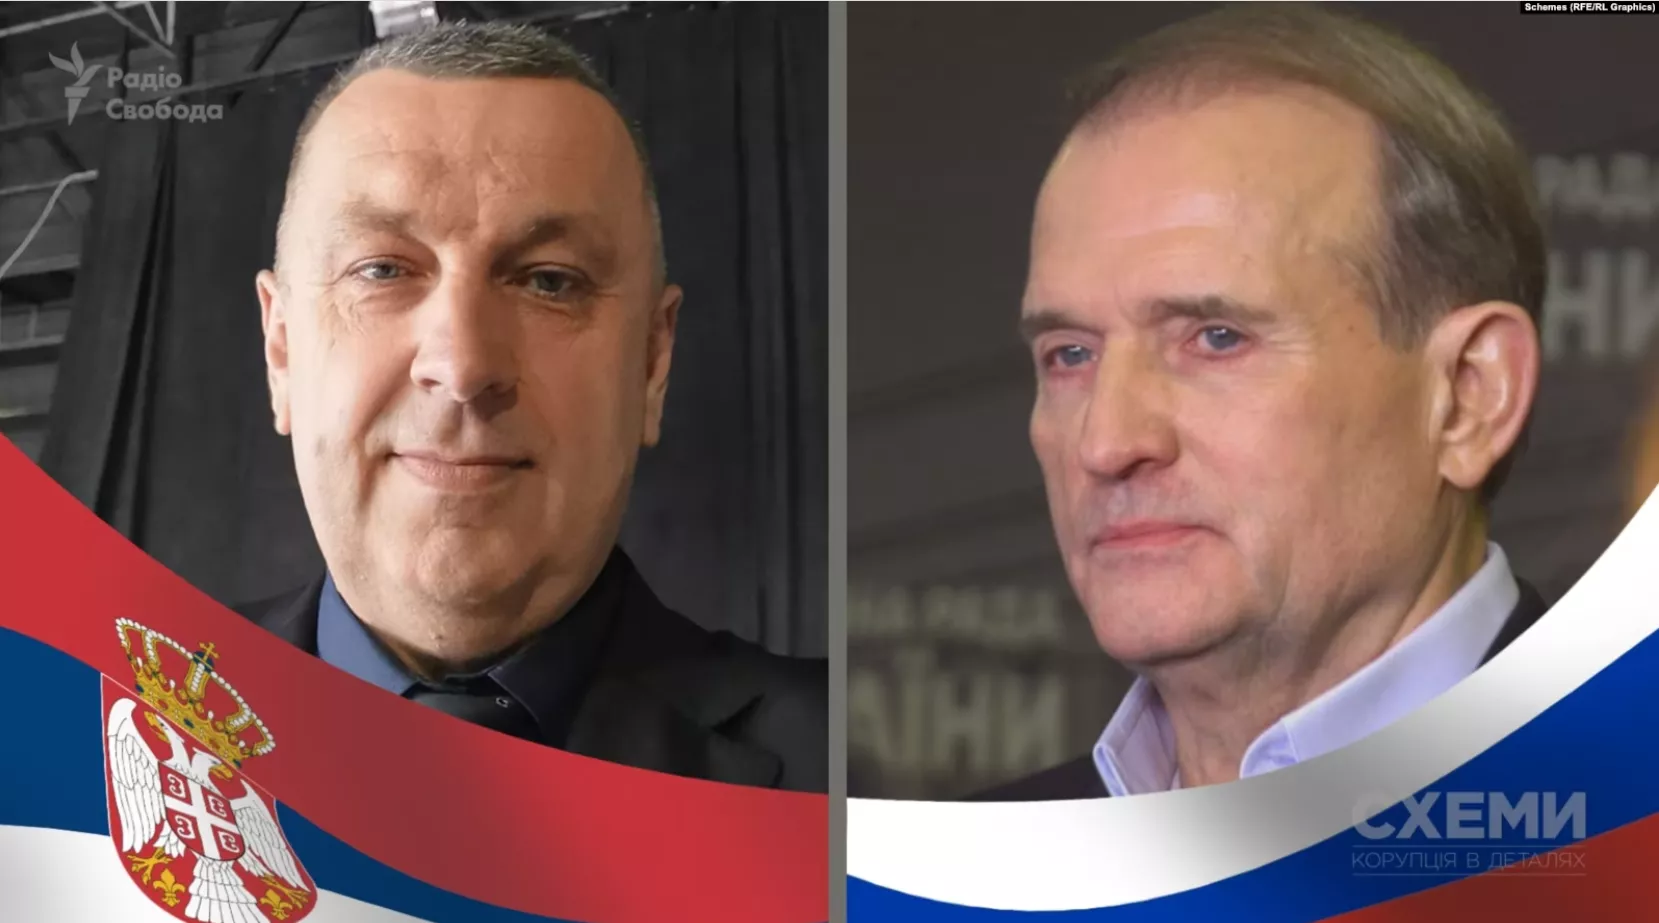 «Схеми»: У Сербії з'явилася філія руху Медведчука «Другая Украина», яку очолив проросійський політик